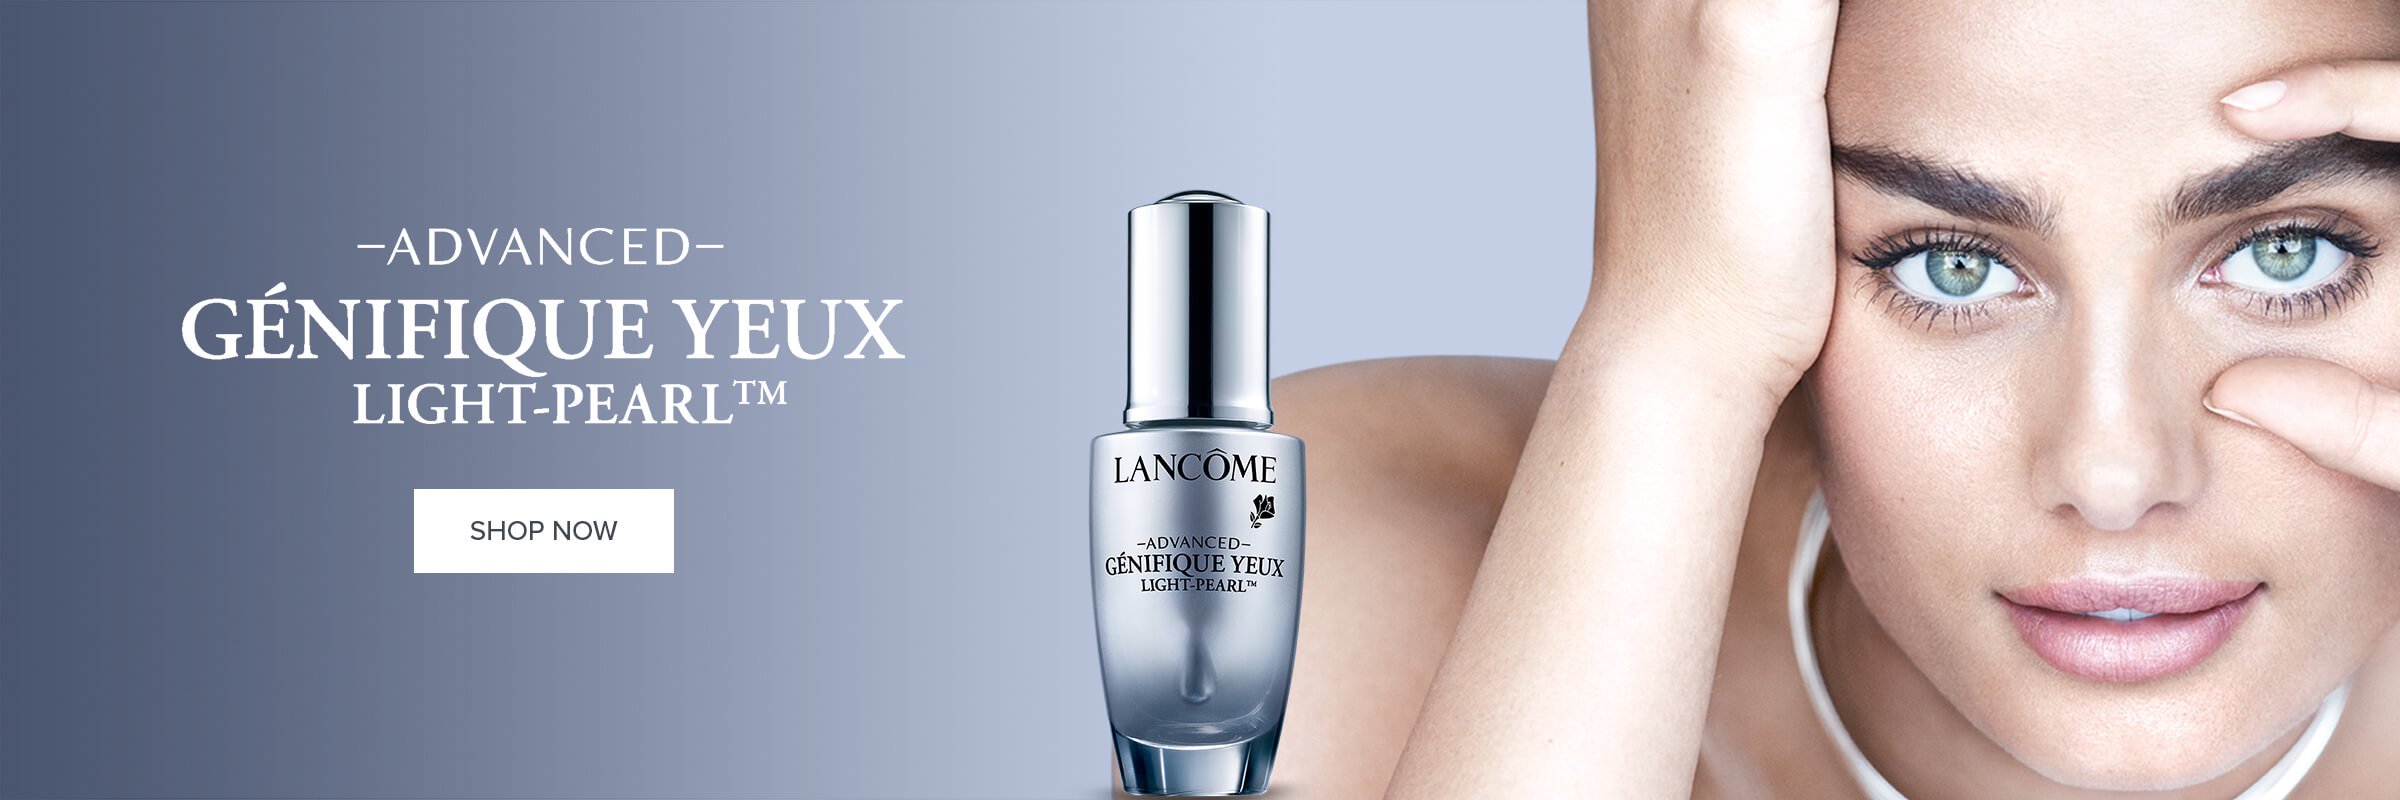 Lancome - Advanced Genifique Yeux Light-Pearl™